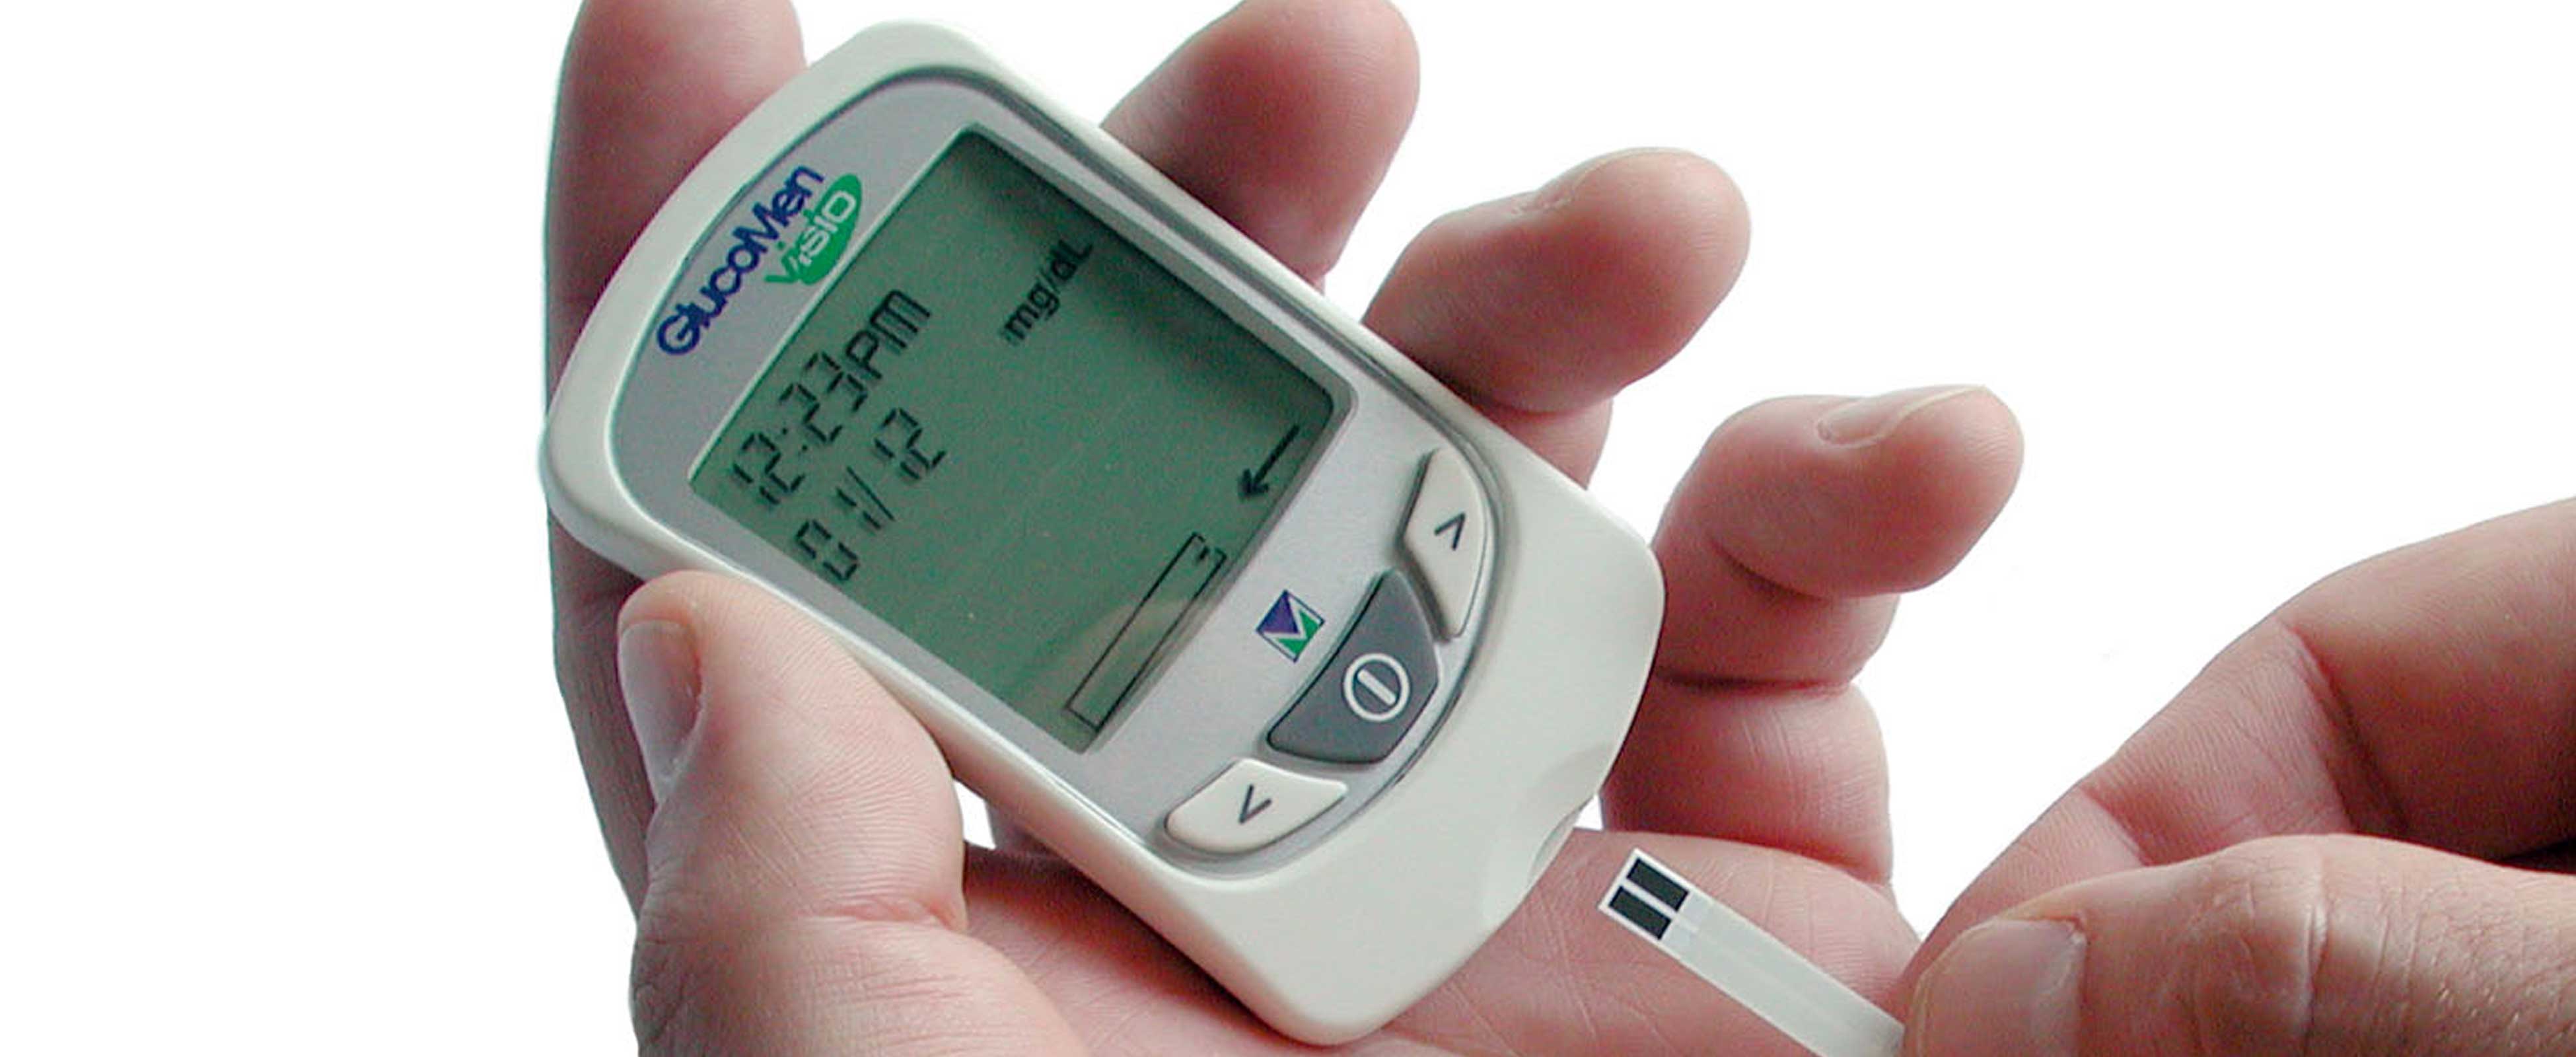 Glucomen Visio blood glucose meter